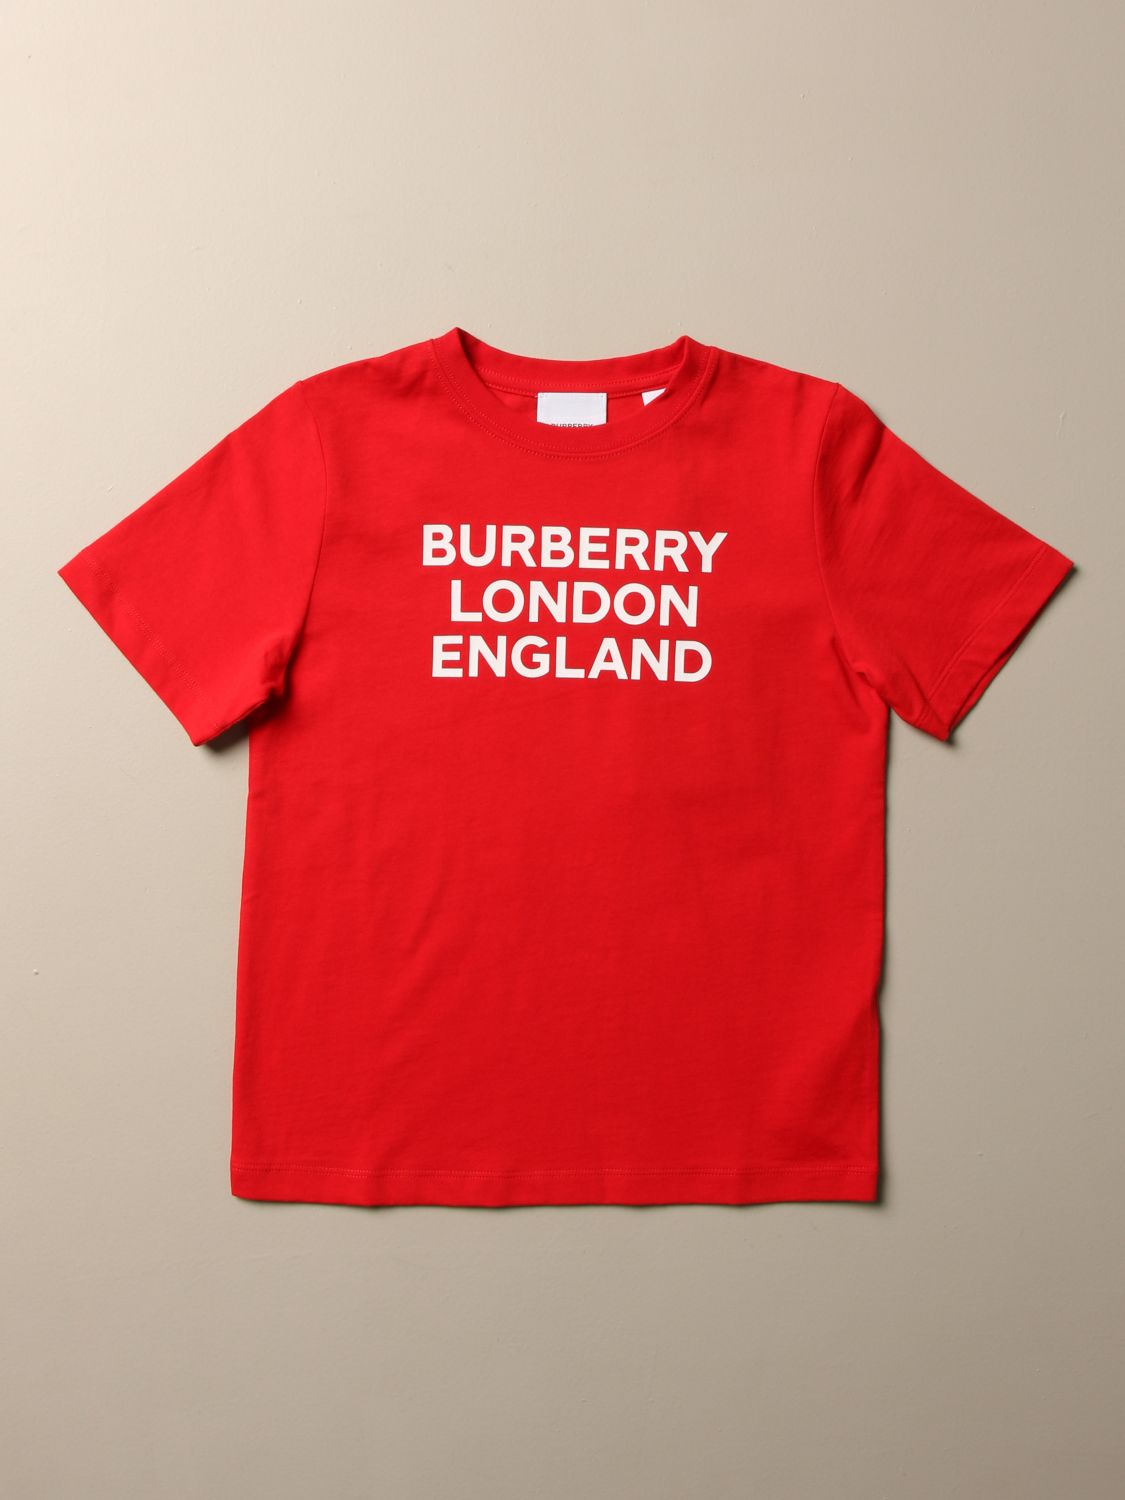 burberry shirt uk